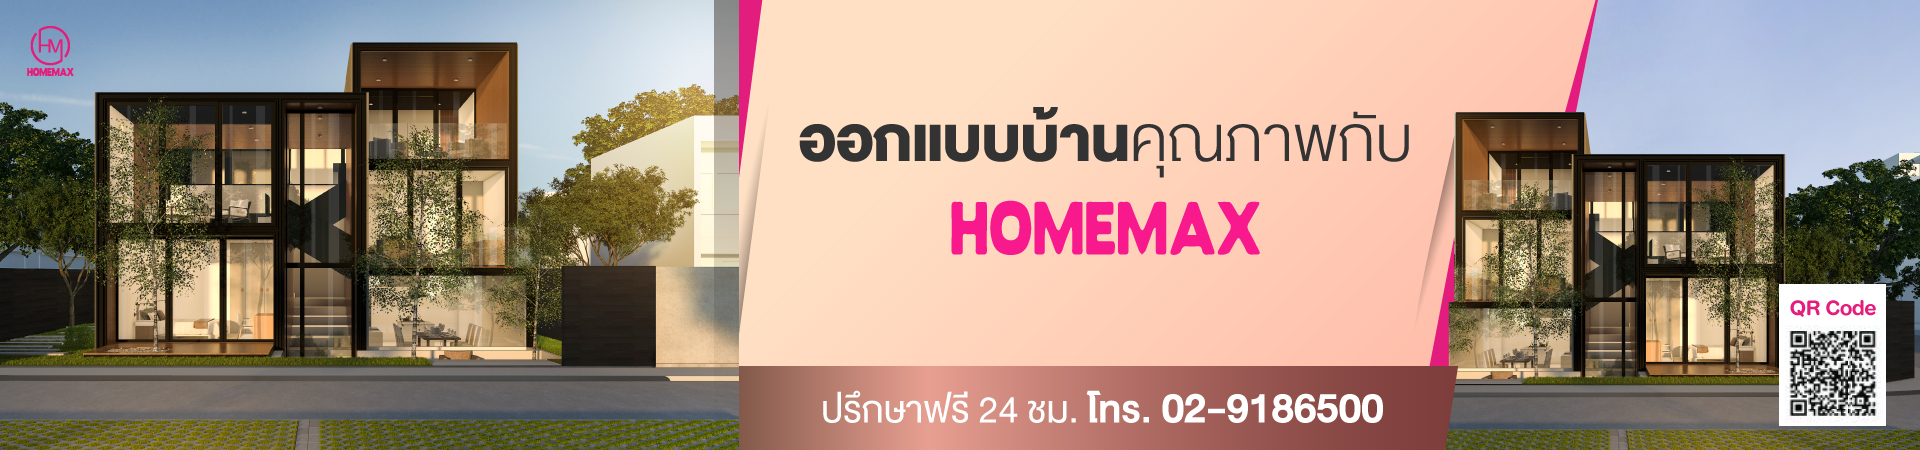 Homemax-banner-ติดต่อ.